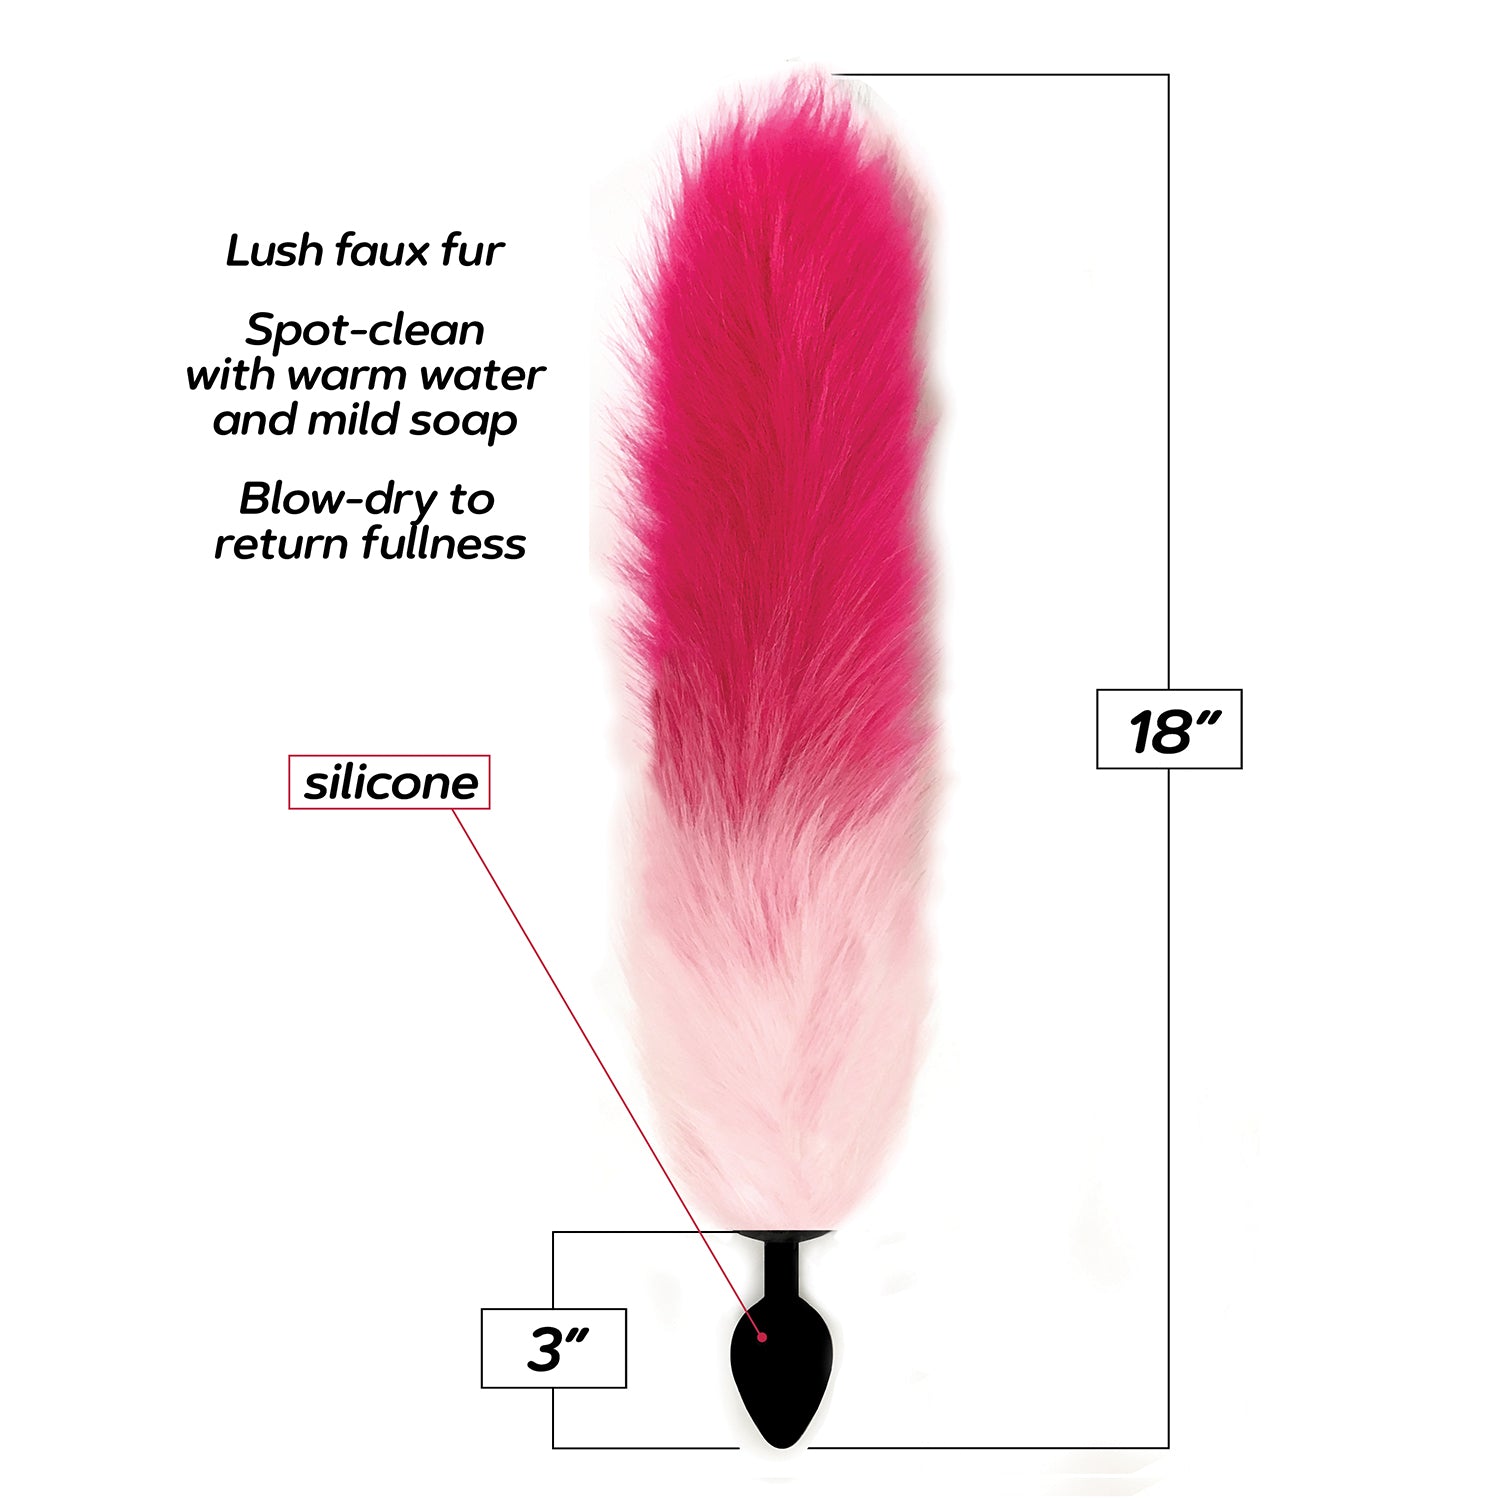 Fox Tail Butt Plug — Genuine Fox Tail - Unicun